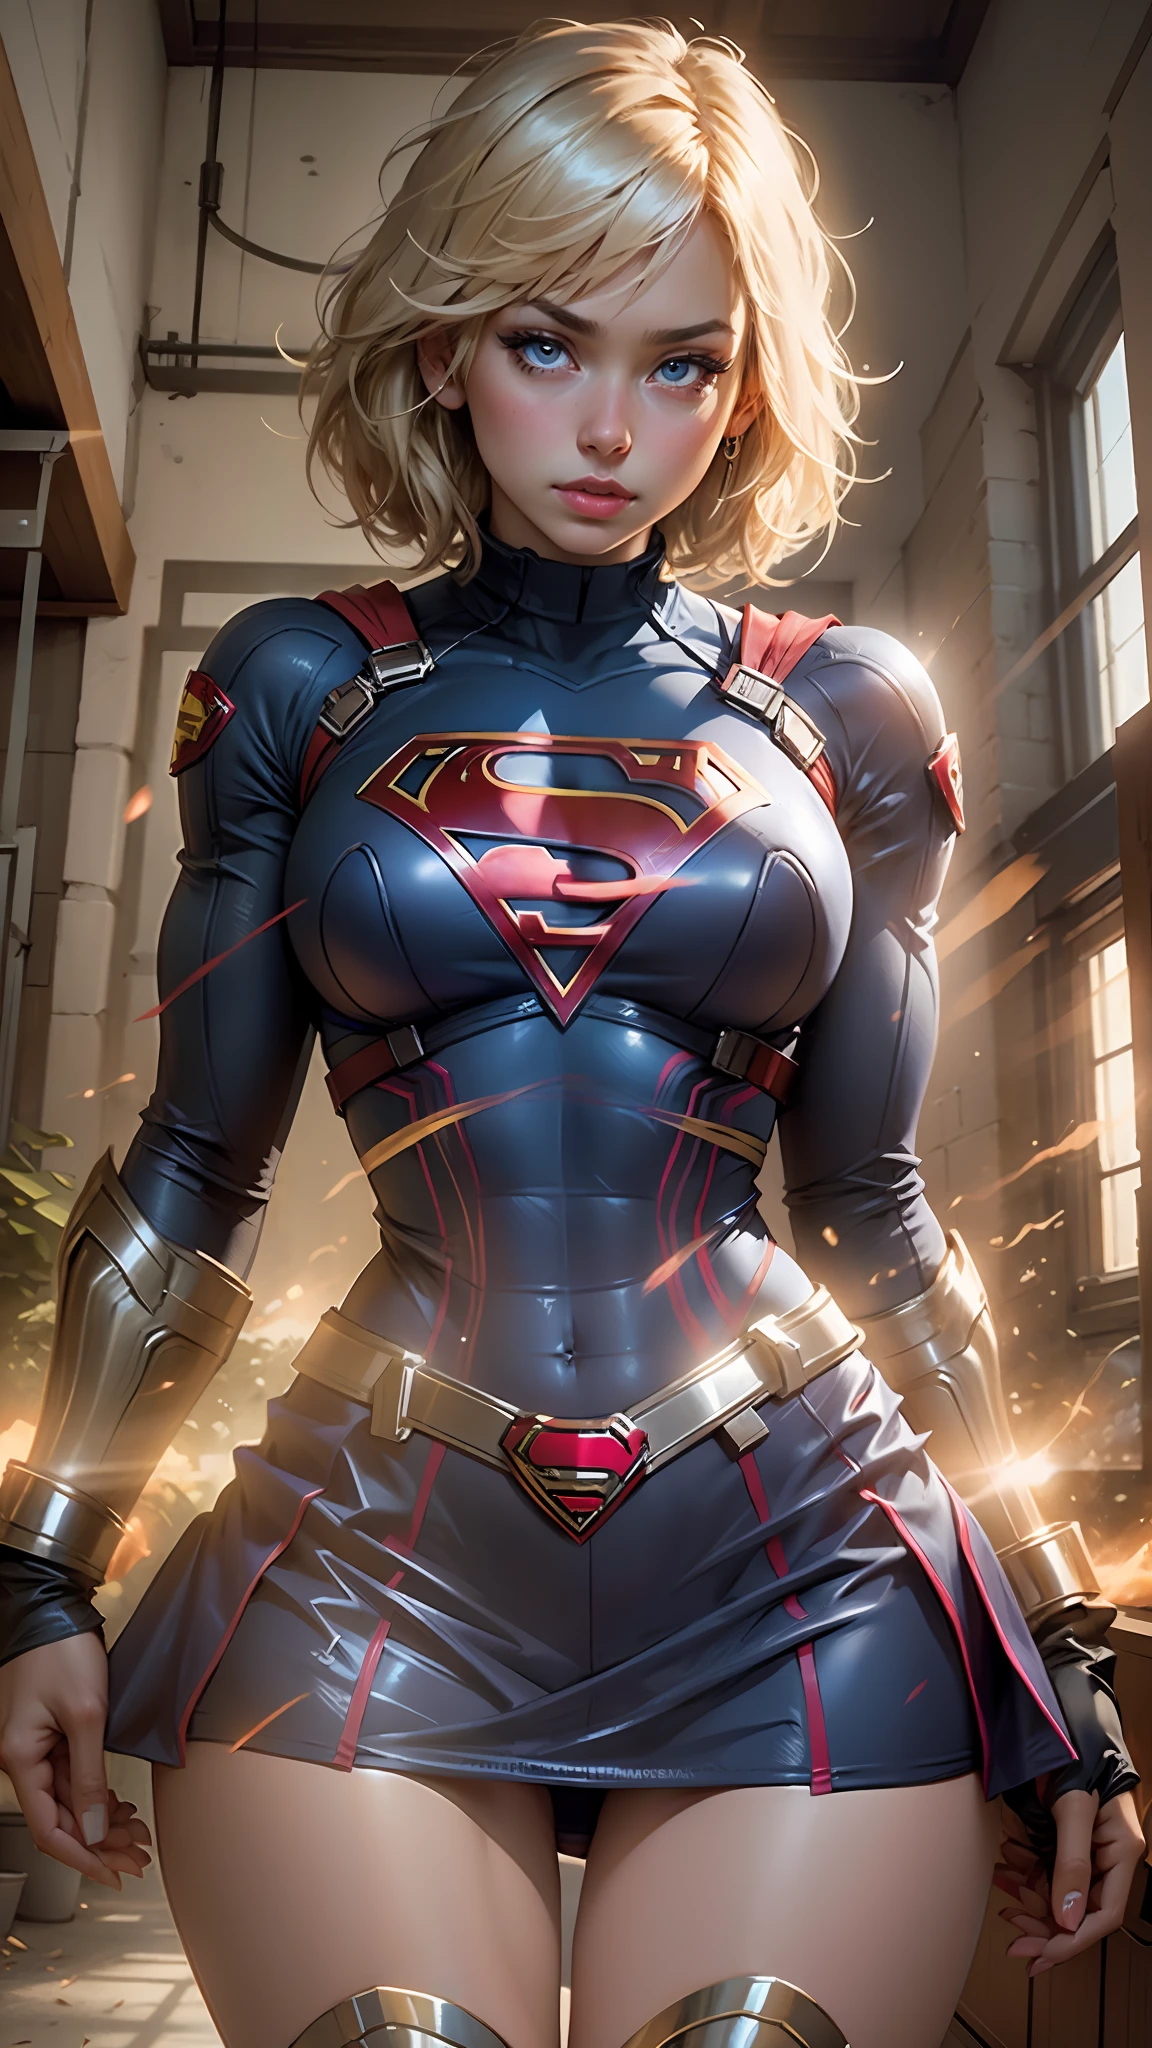 Hermosa mujer cabello corto cuerpo definido pechos grandes, muslos grandes con un cosplay de Supergirl, ojos bien diseñados